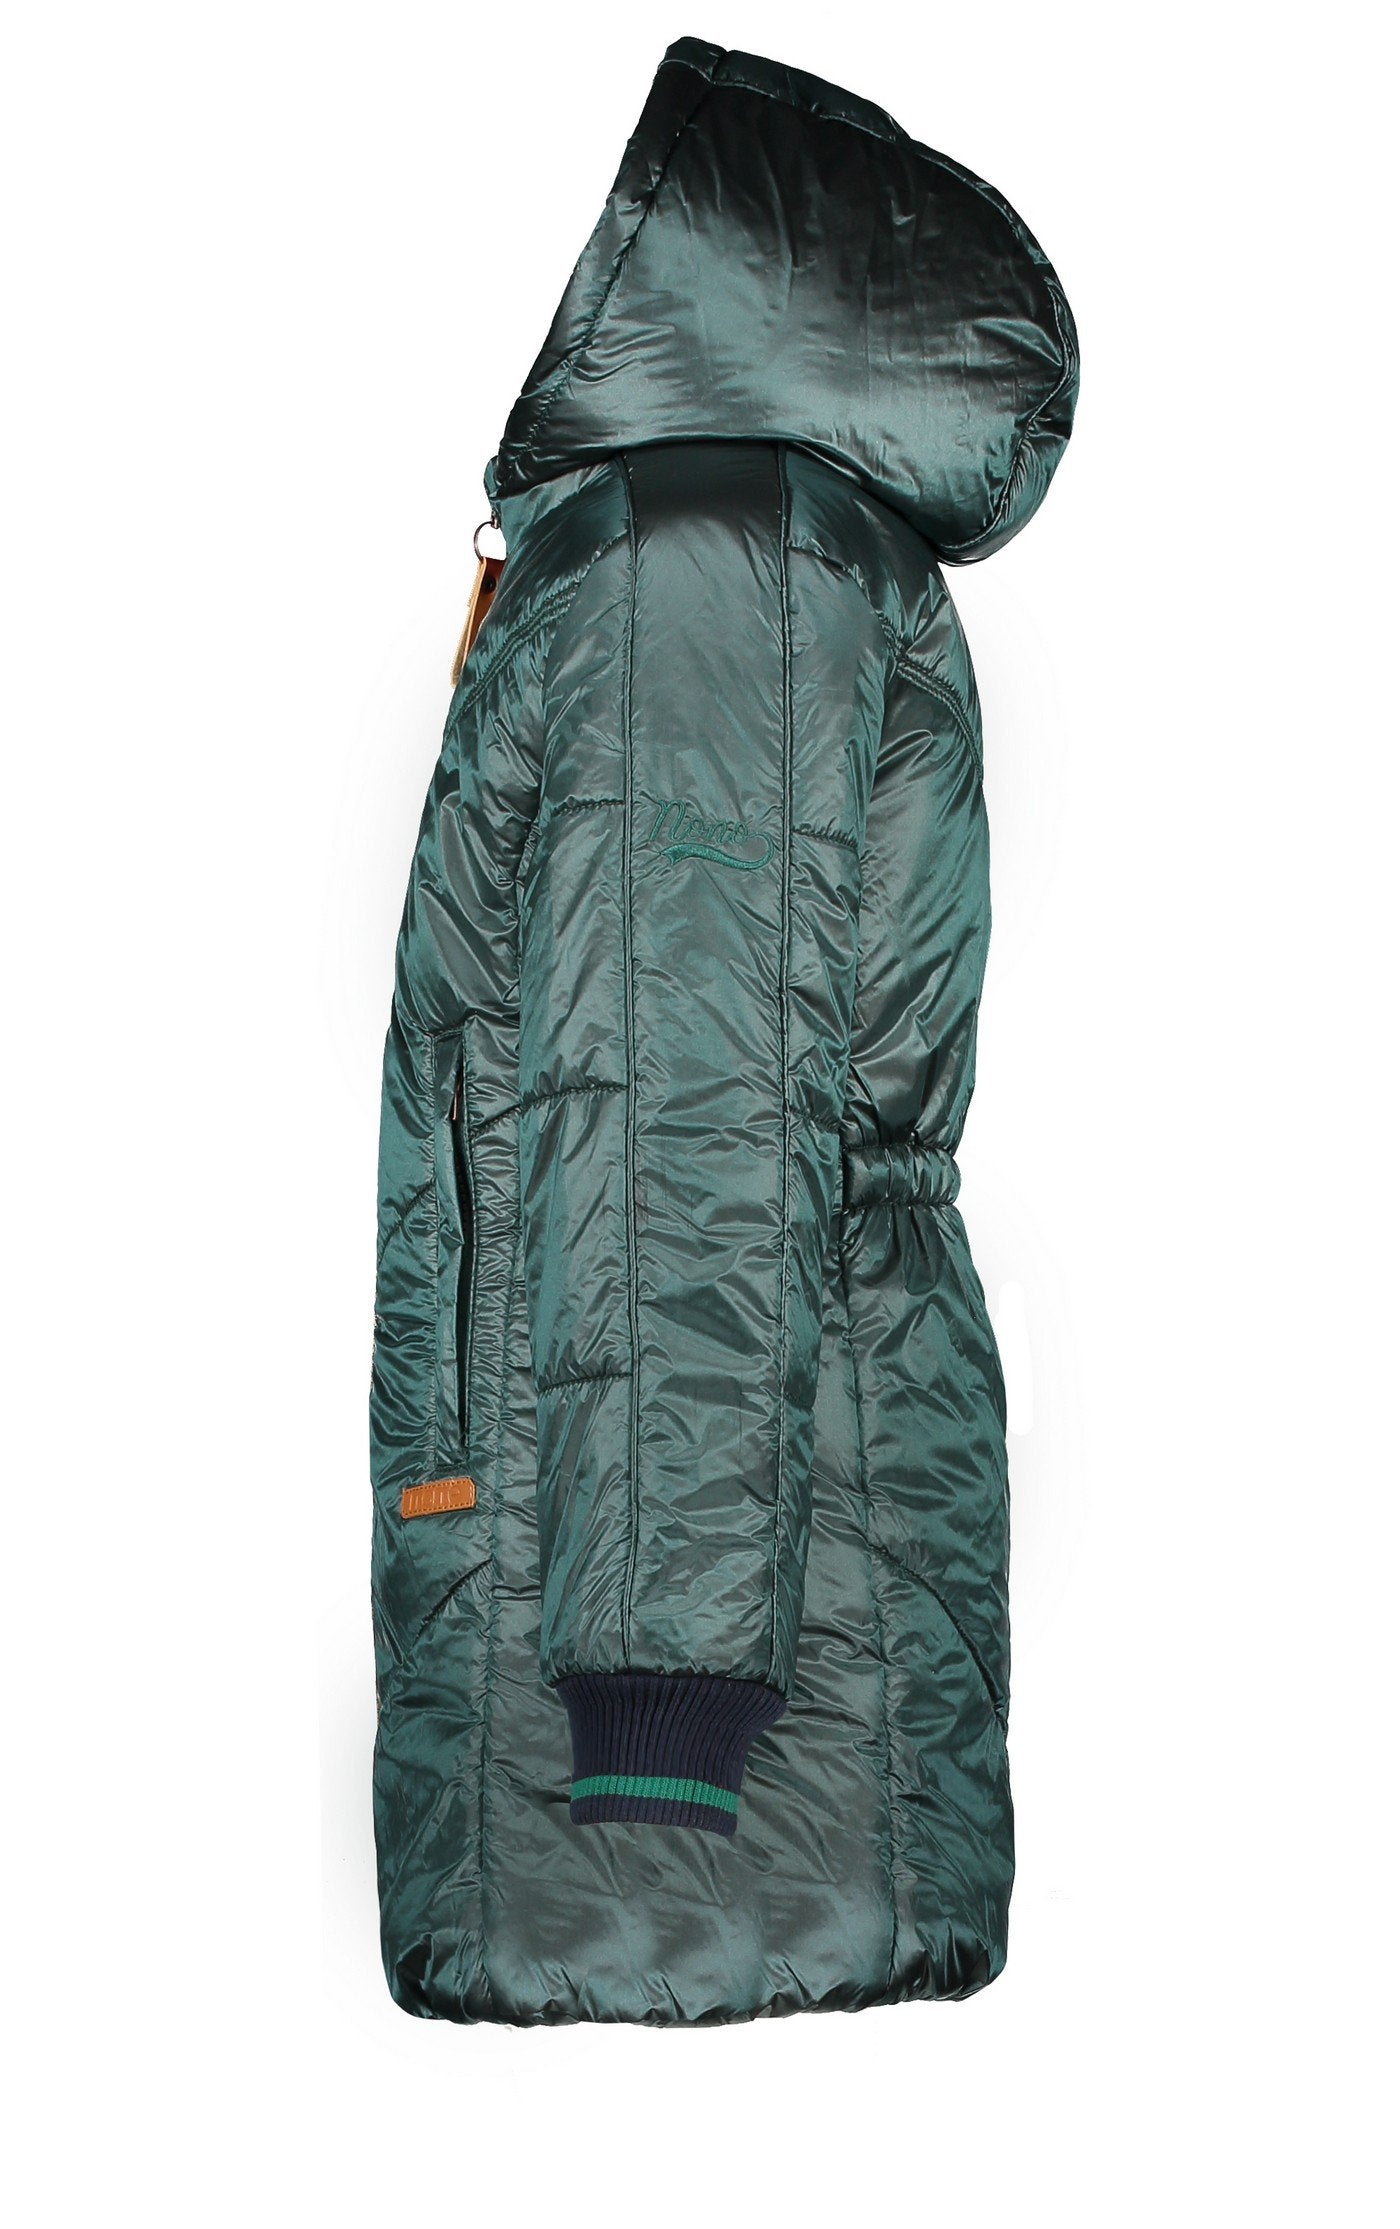 Meisjes Becky long hooded jacket van NoNo in de kleur Deep Ocean in maat 146-152.